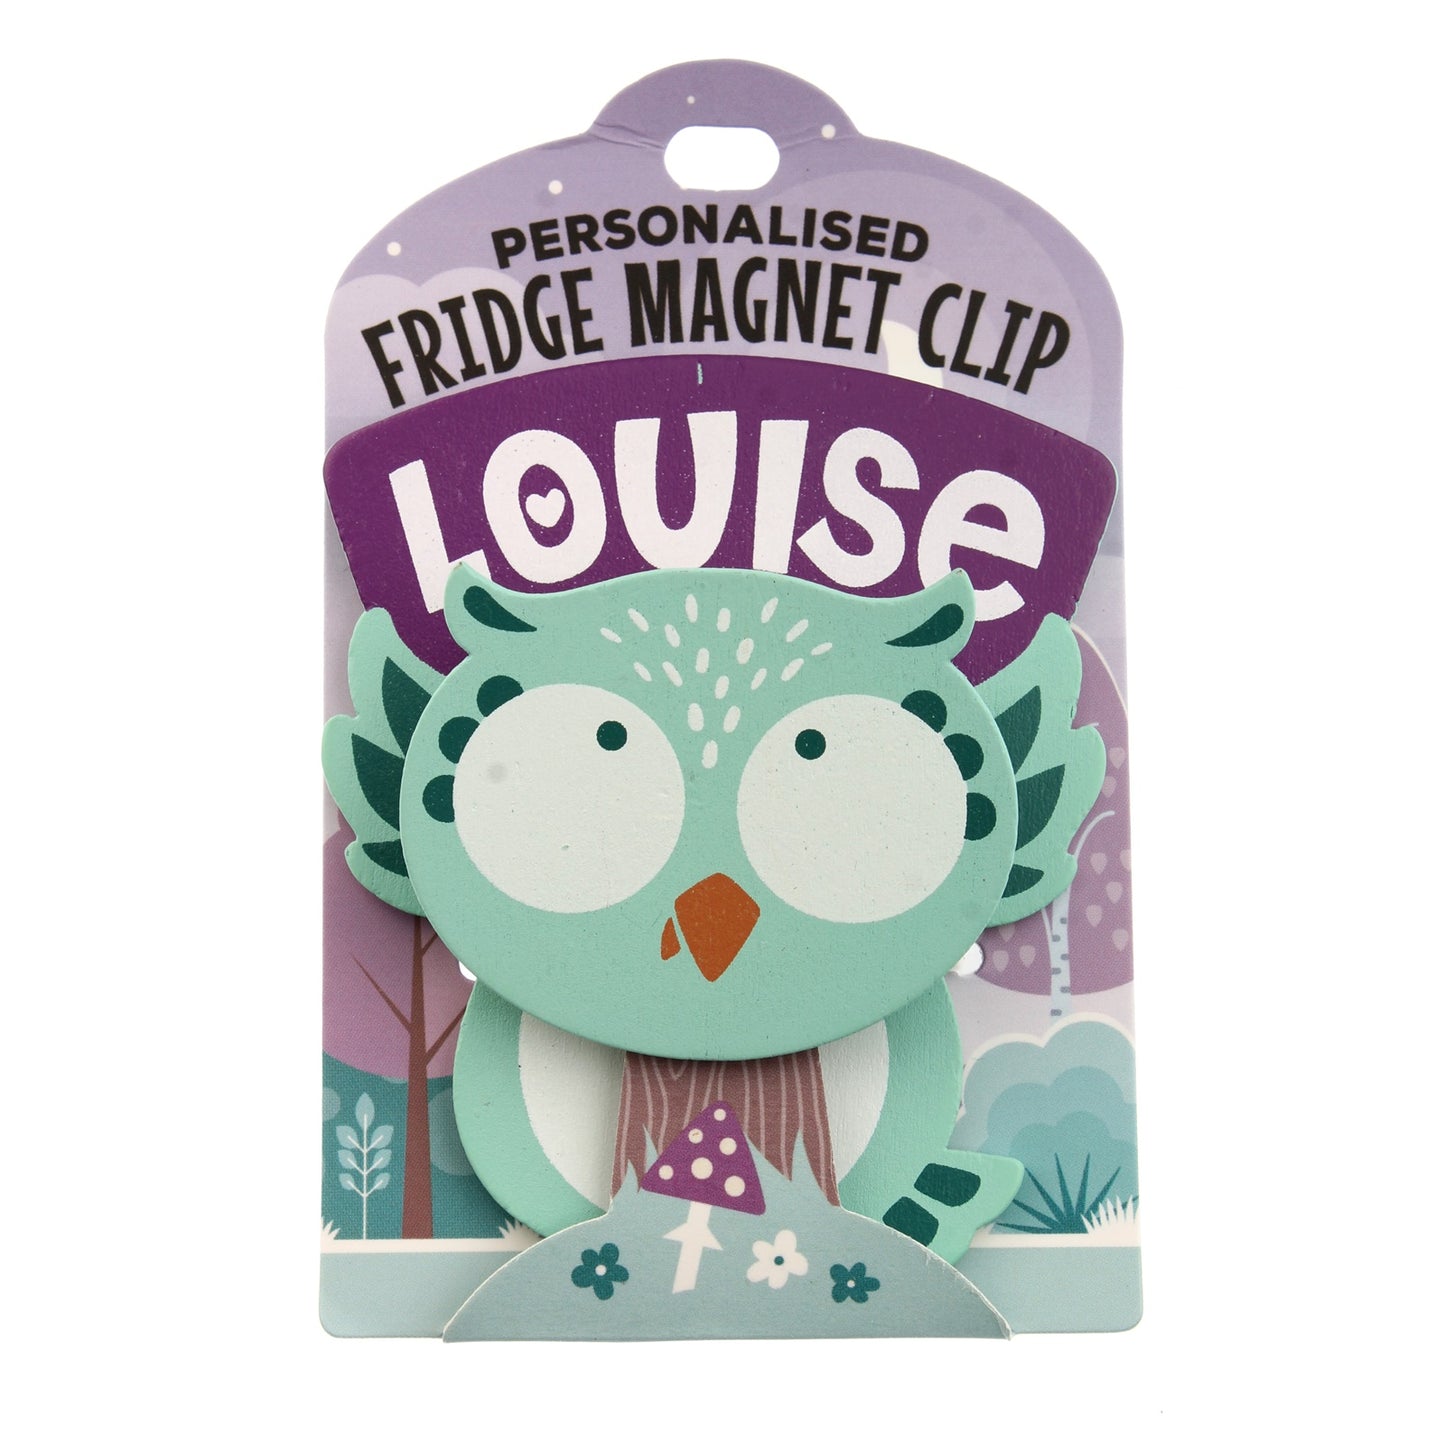 Fridge Magnet Clip Louise